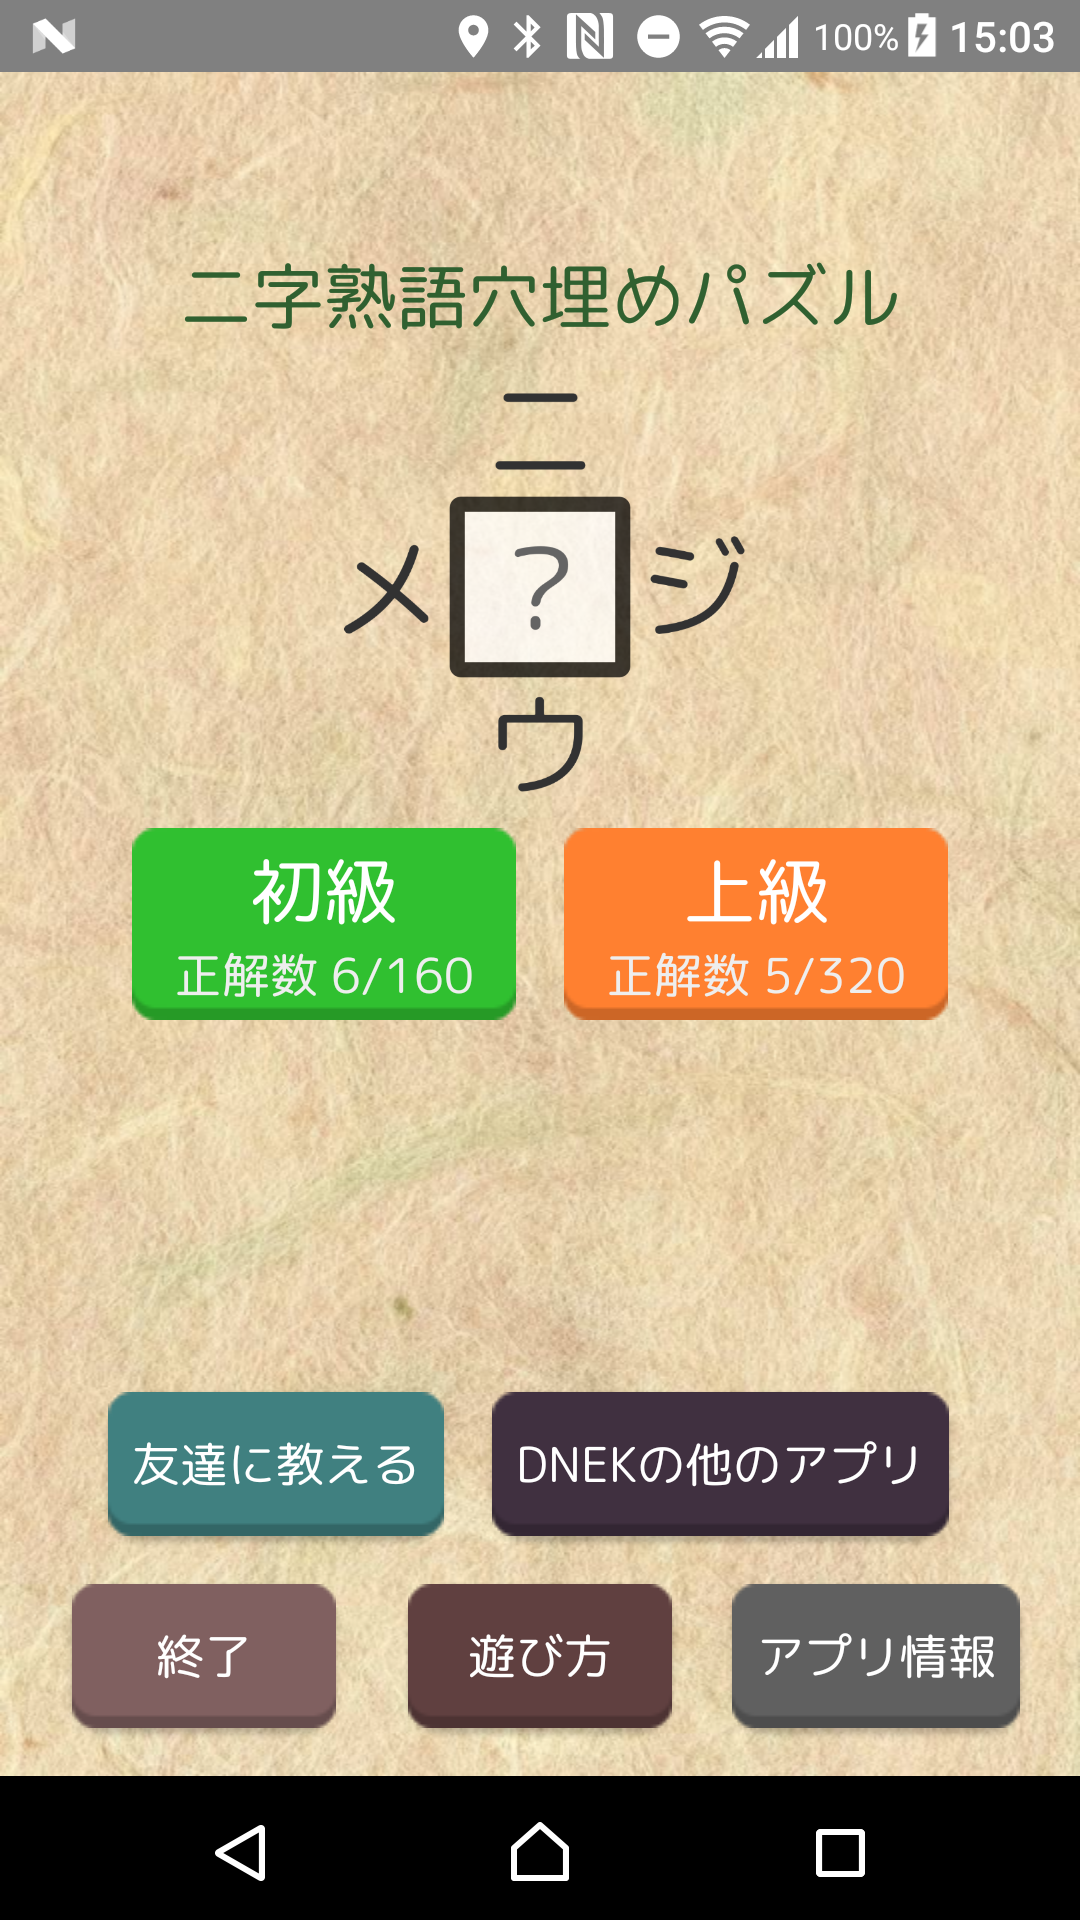 Screenshot 1 of [Kanji puzzle 480 domande] Puzzle idiomatico di due lettere da riempire ~Nijiume~ 3.2.3